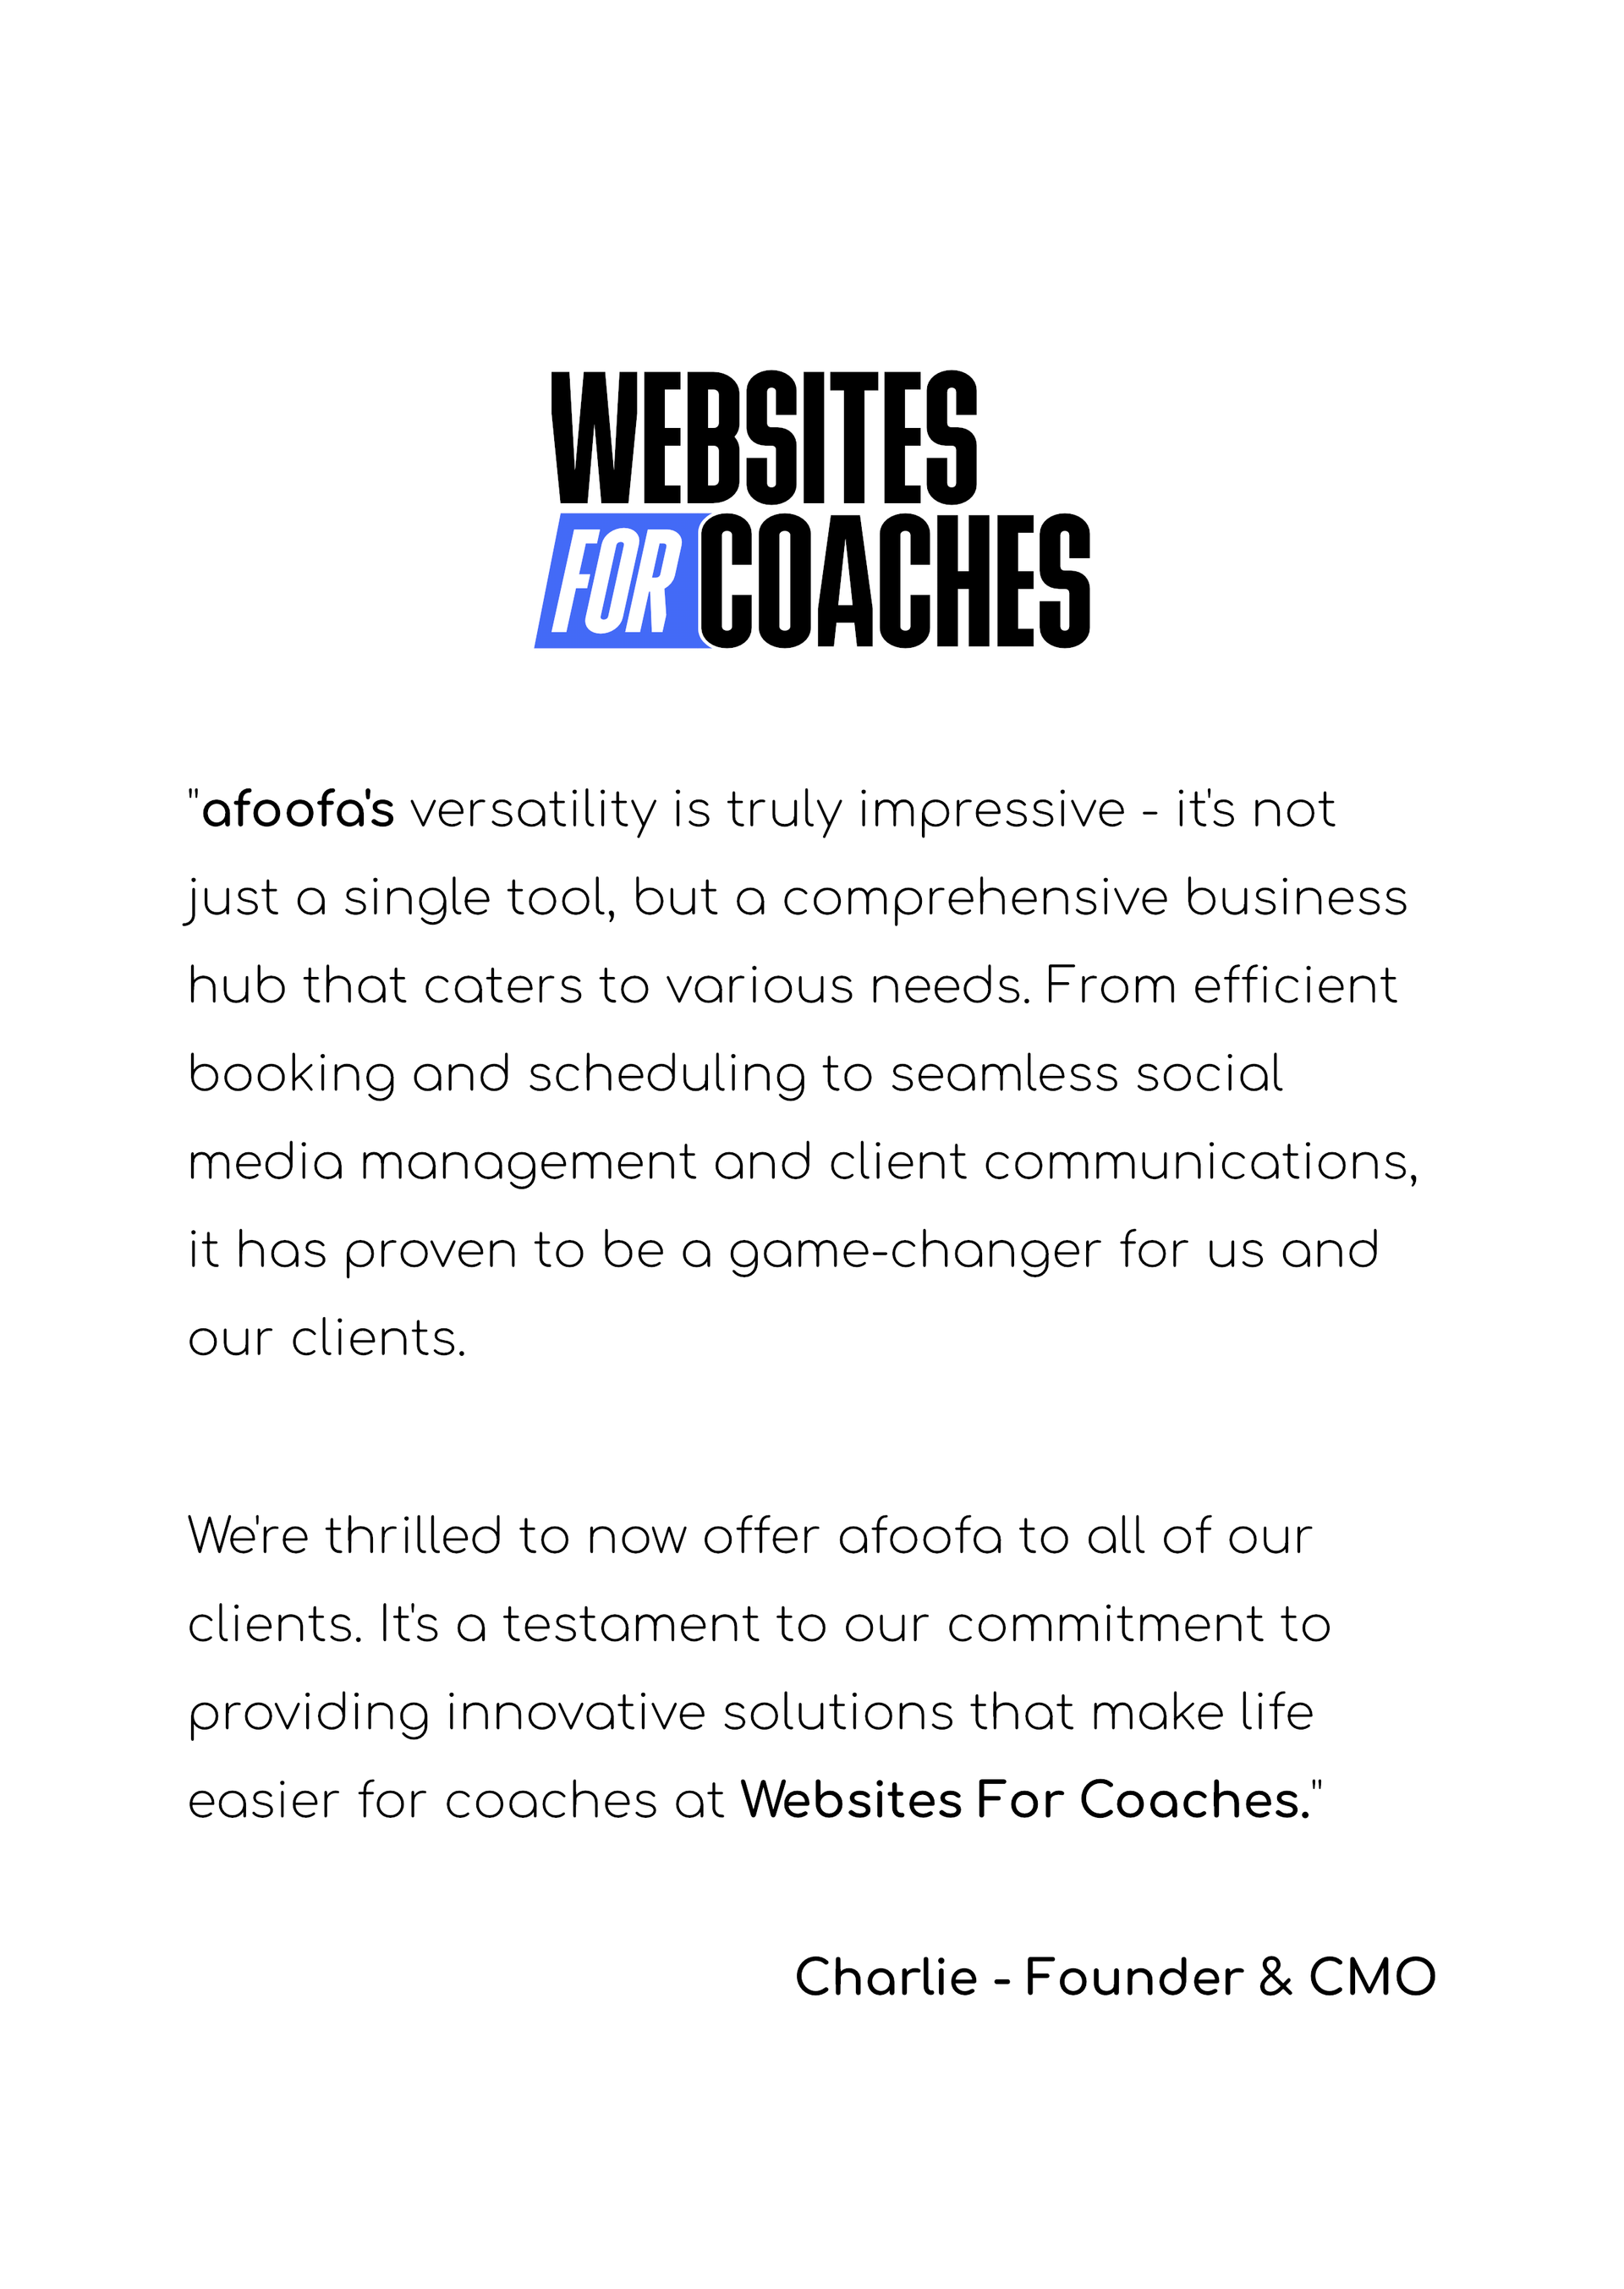 Websites For Coaches Testimonial